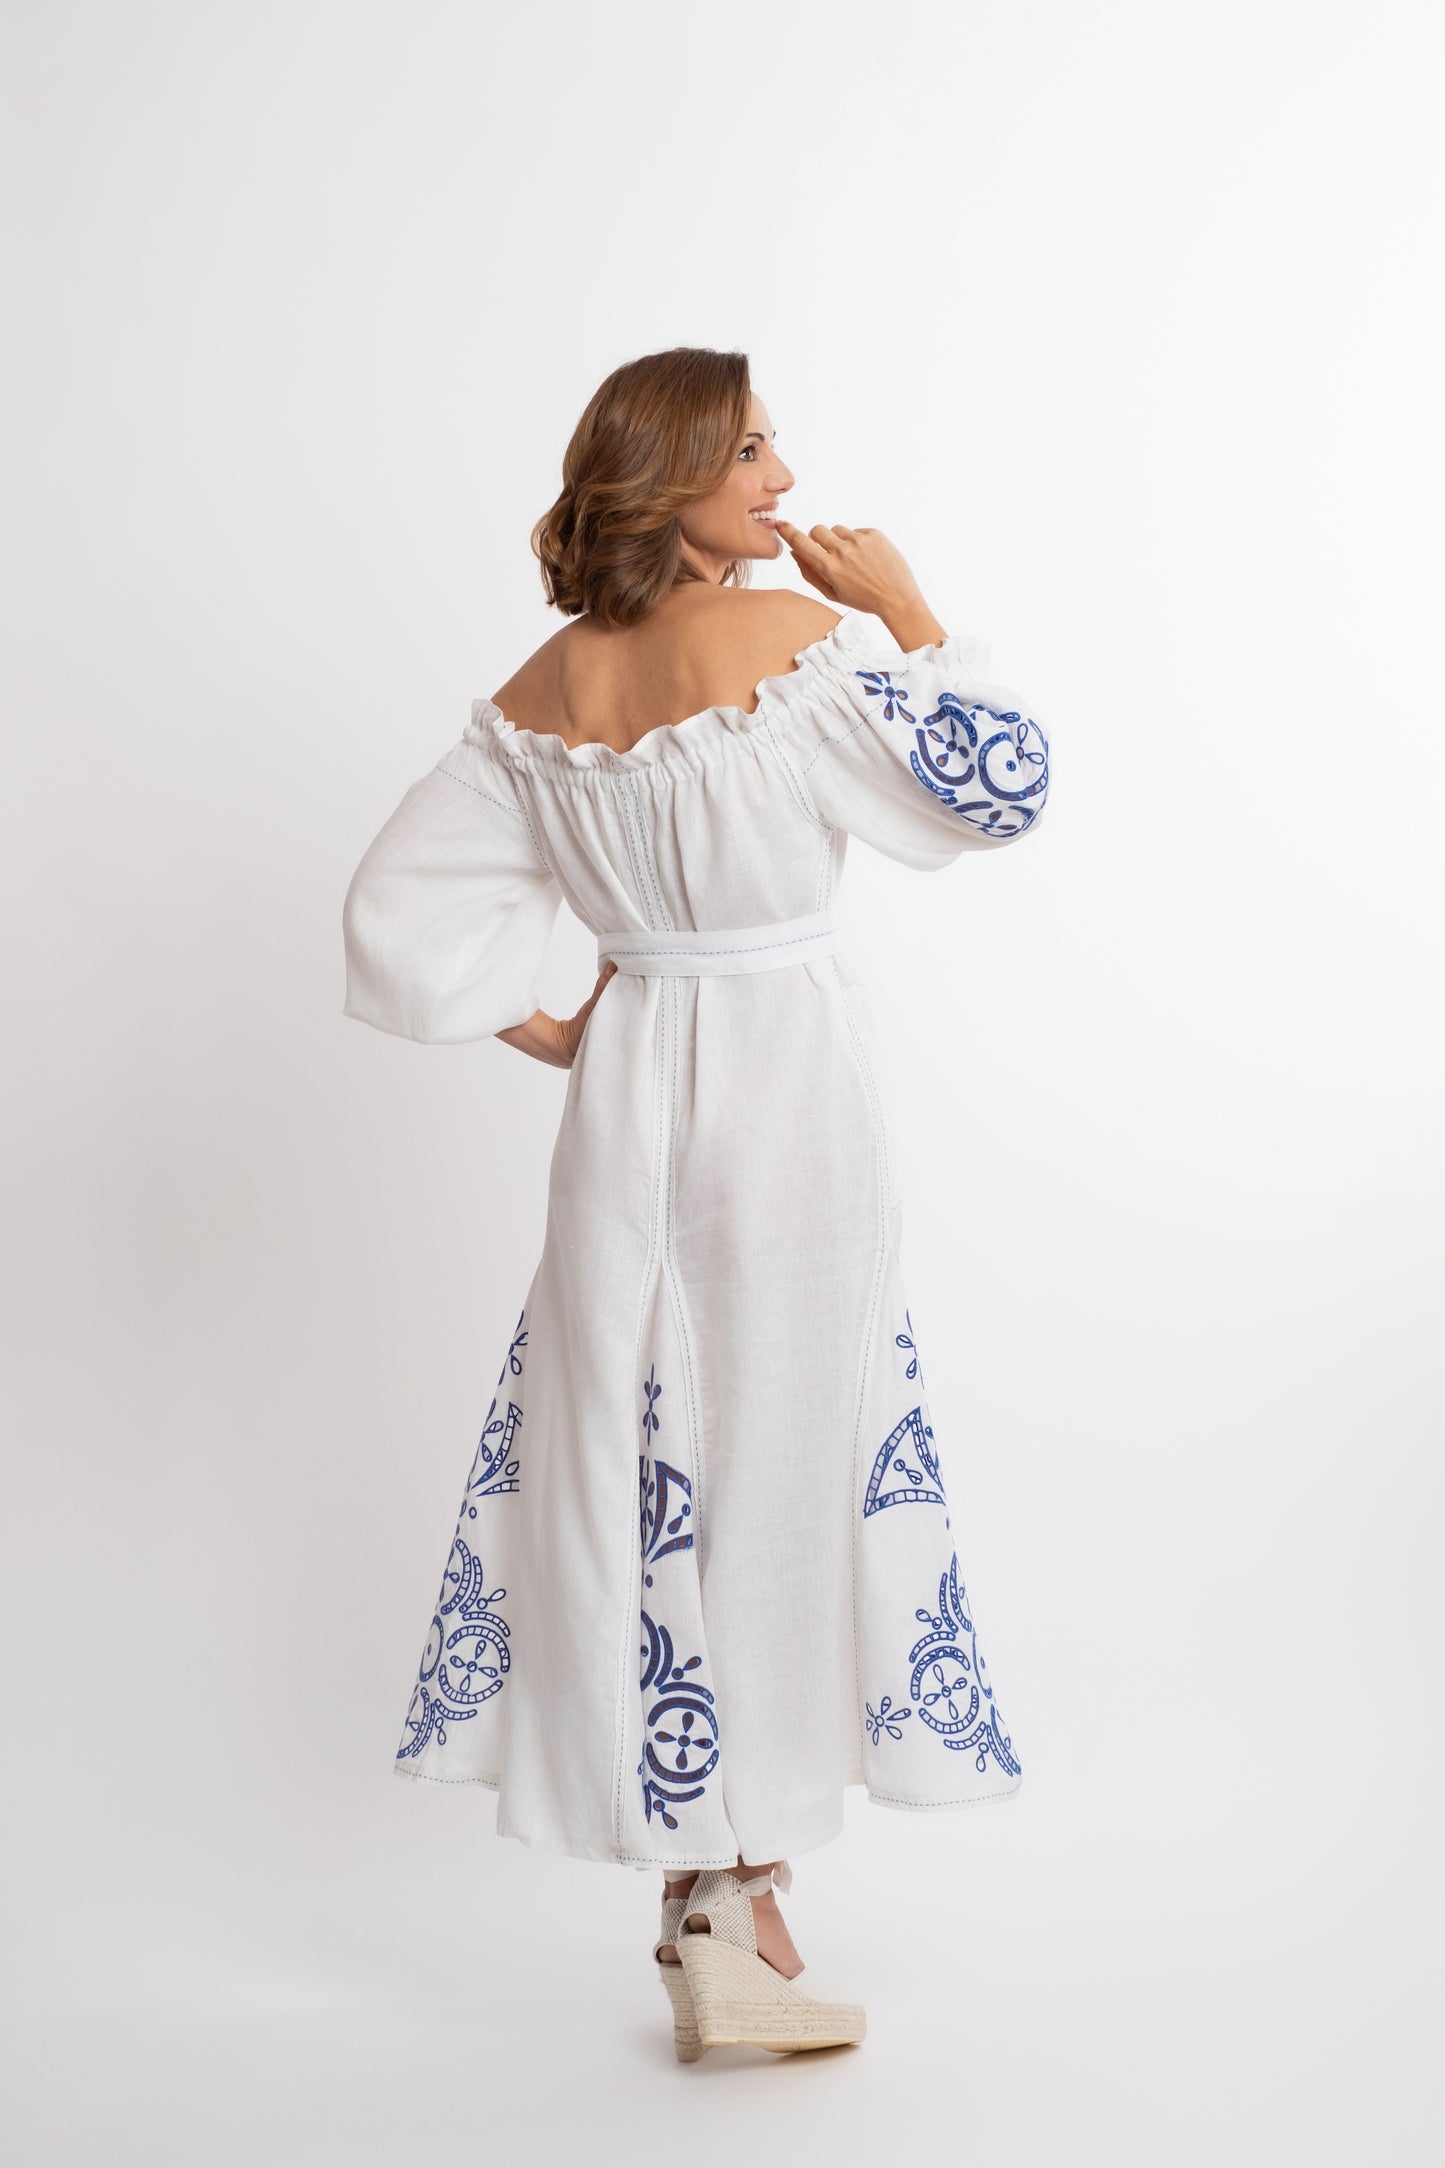 Mikonos: Vestido de lino blanco con escote de barco y cinturón, bordado en azul.